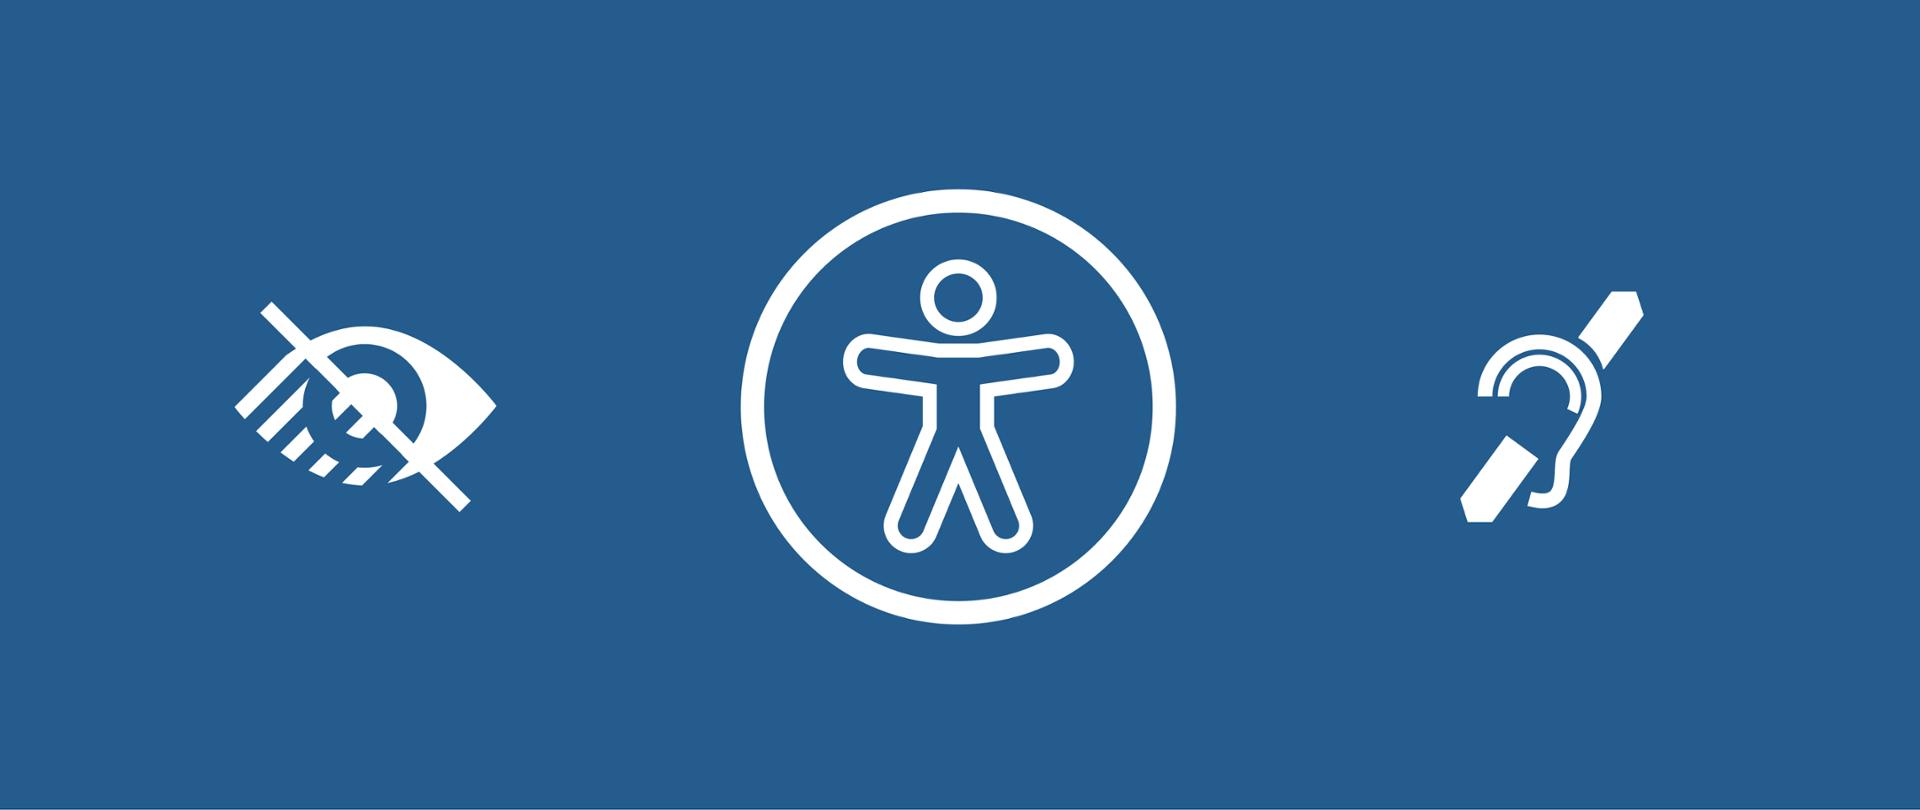 3 ikony symbolizujące dostępność cyfrową i użytkowników z niepełnosprawnościami wzroku, słuchu i ruchu. 